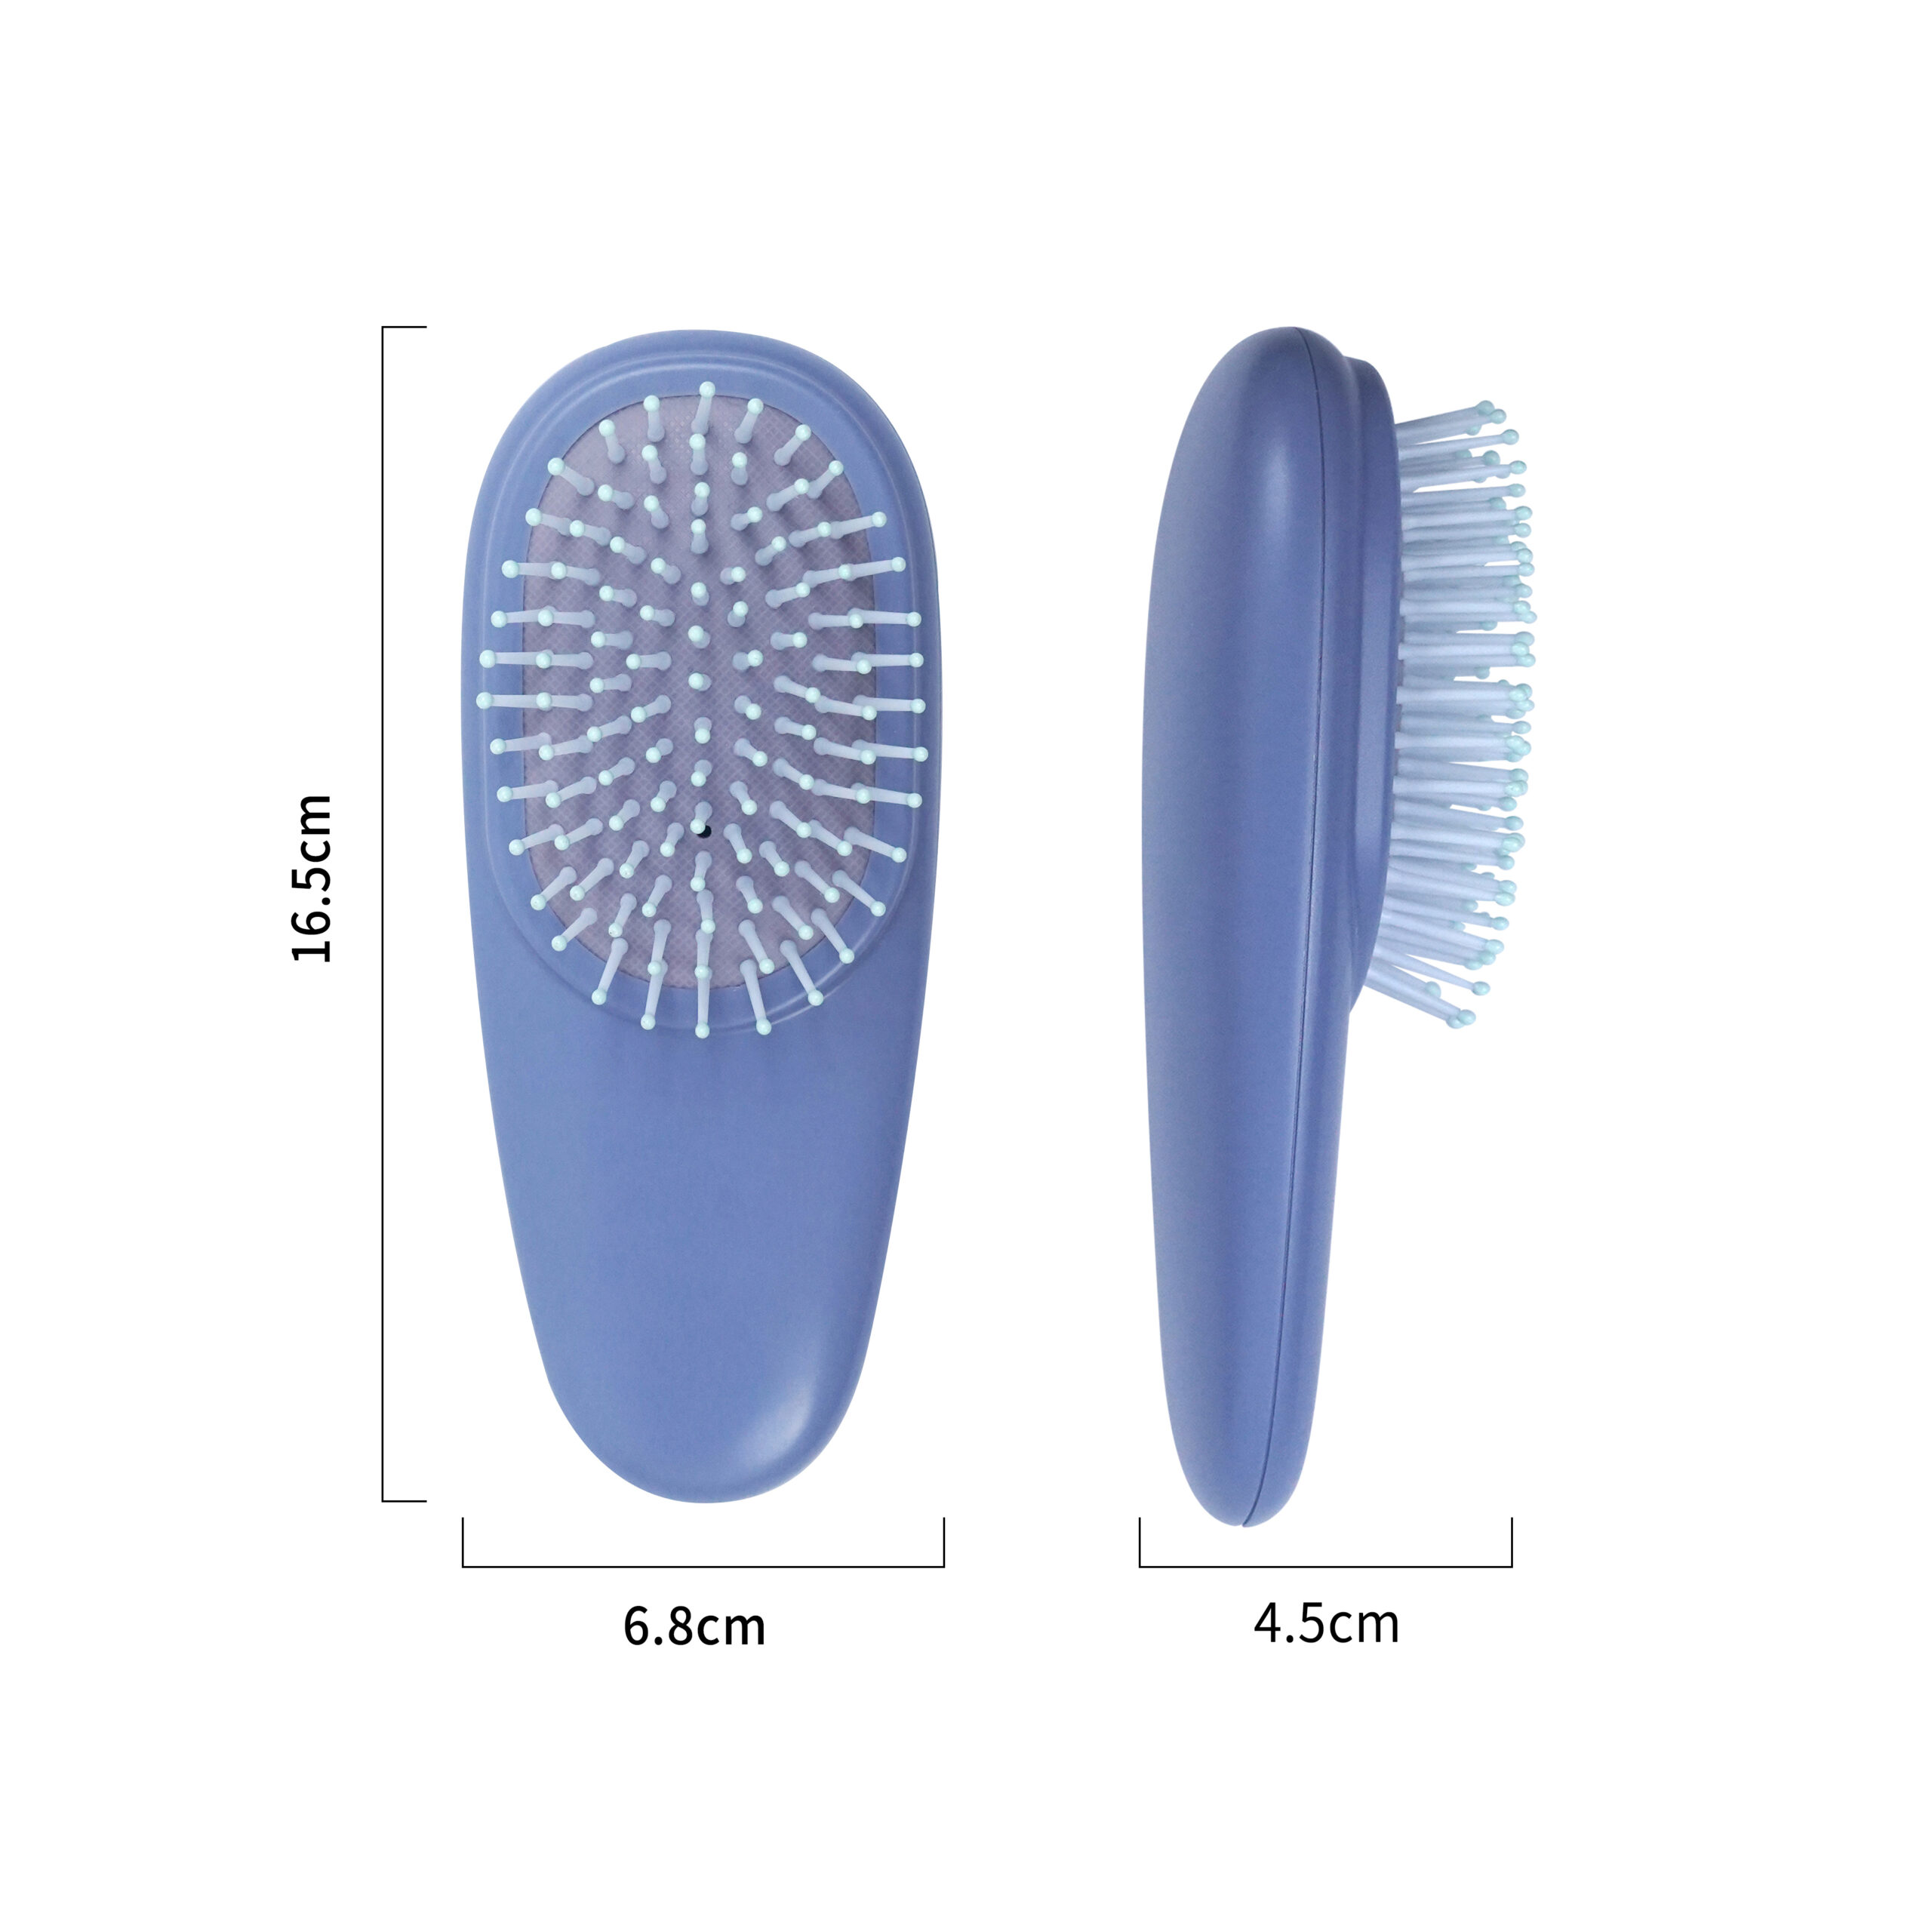 Portable Blue Paddle Hair Brush